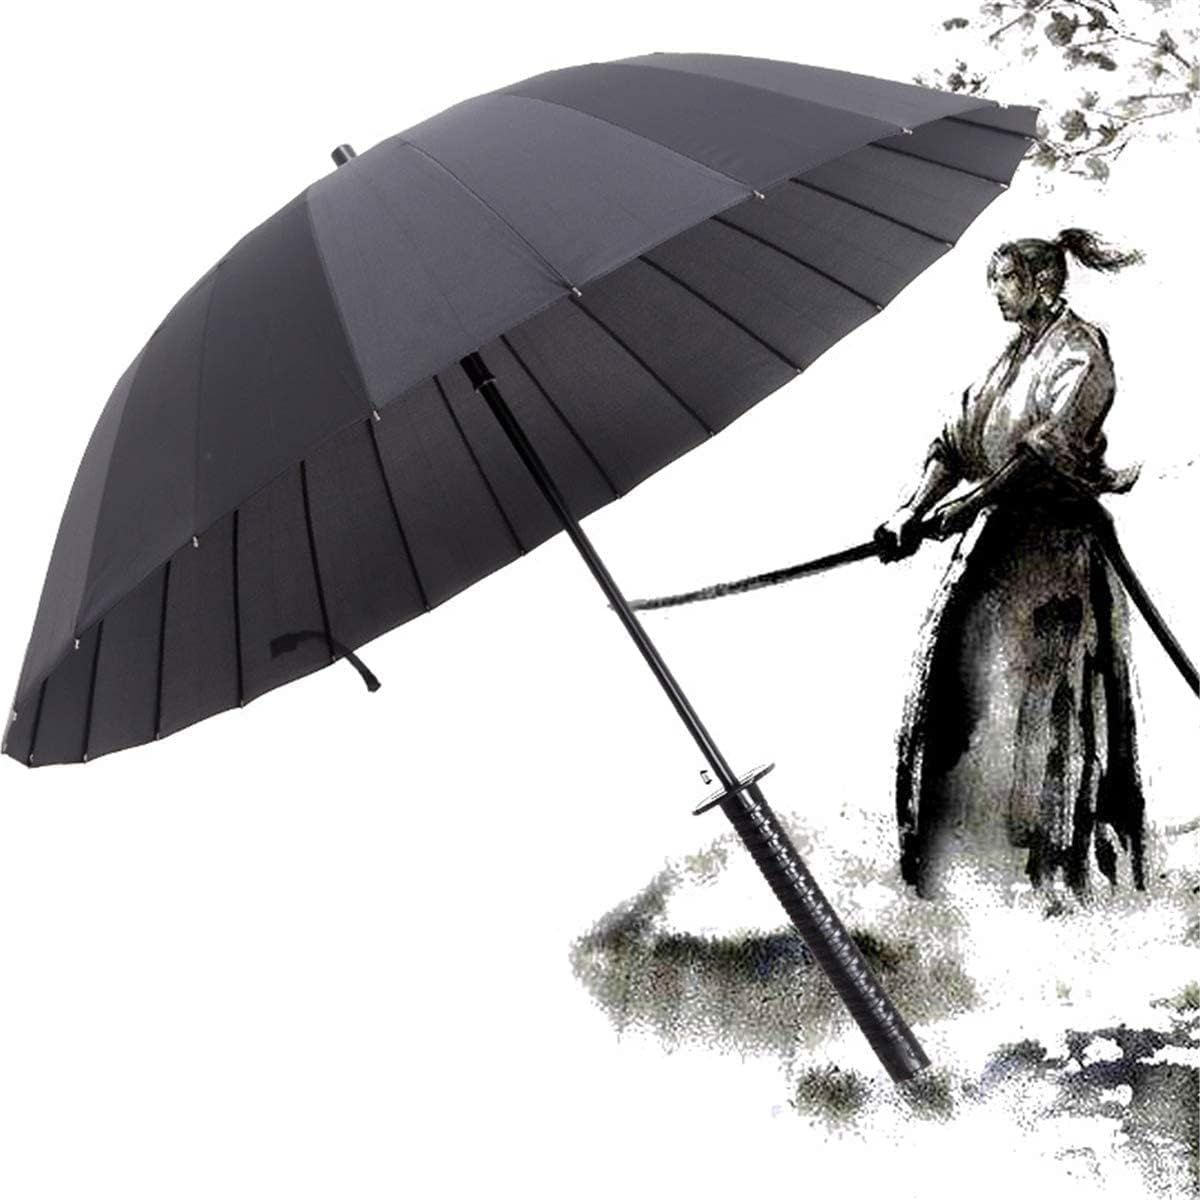 Зонт катана 24 спицы Самурай. Зонт катана 24 спицы. Зонт катана меч самурая 24 спицы диаметр купола 108. Парасоль зонт японский. Японские зонты купить